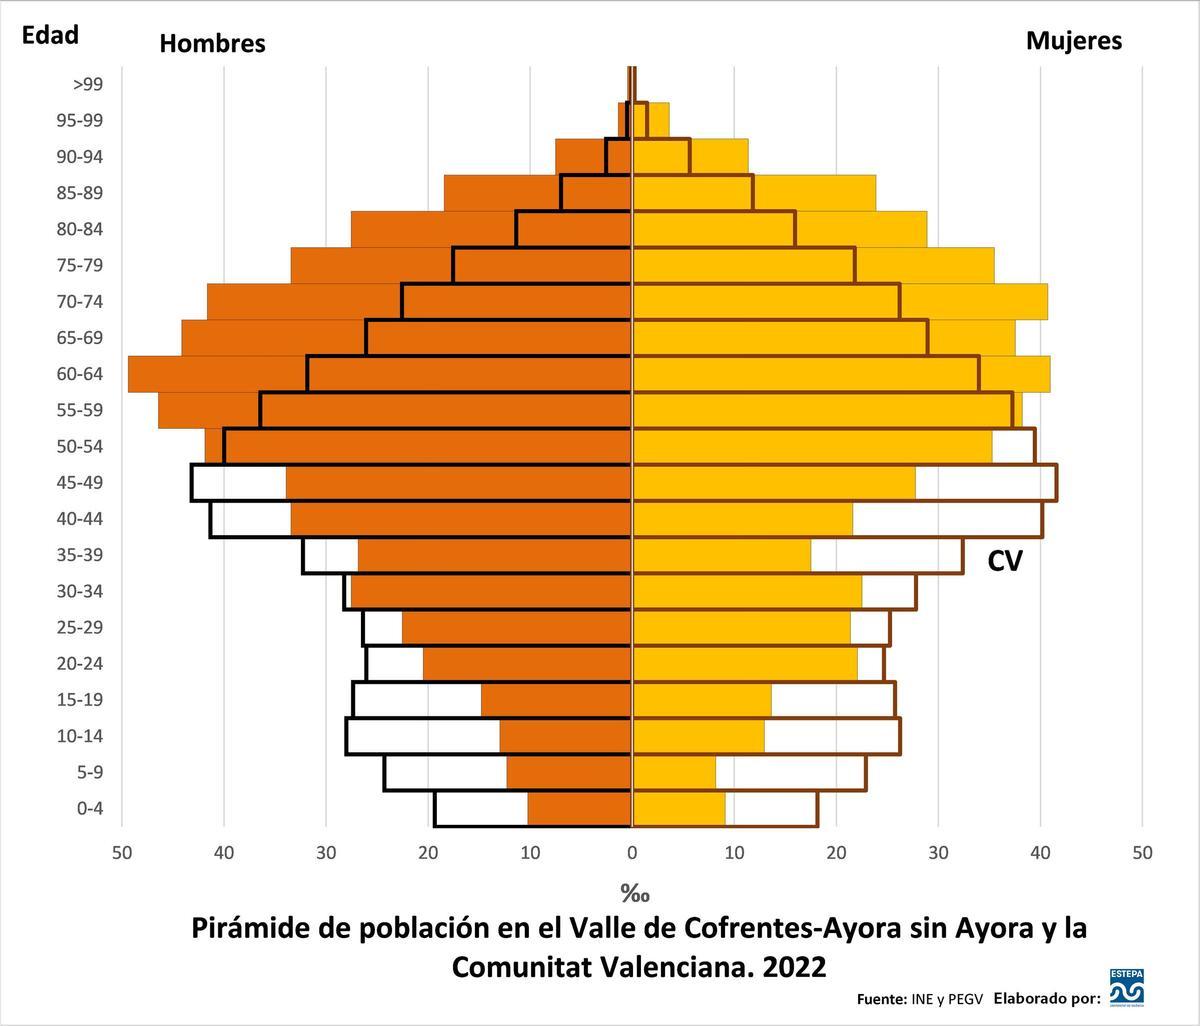 Pirámide de población en el Valle de Cofrentes-Ayora sin Ayora y la Comunitat Valenciana. 2022.